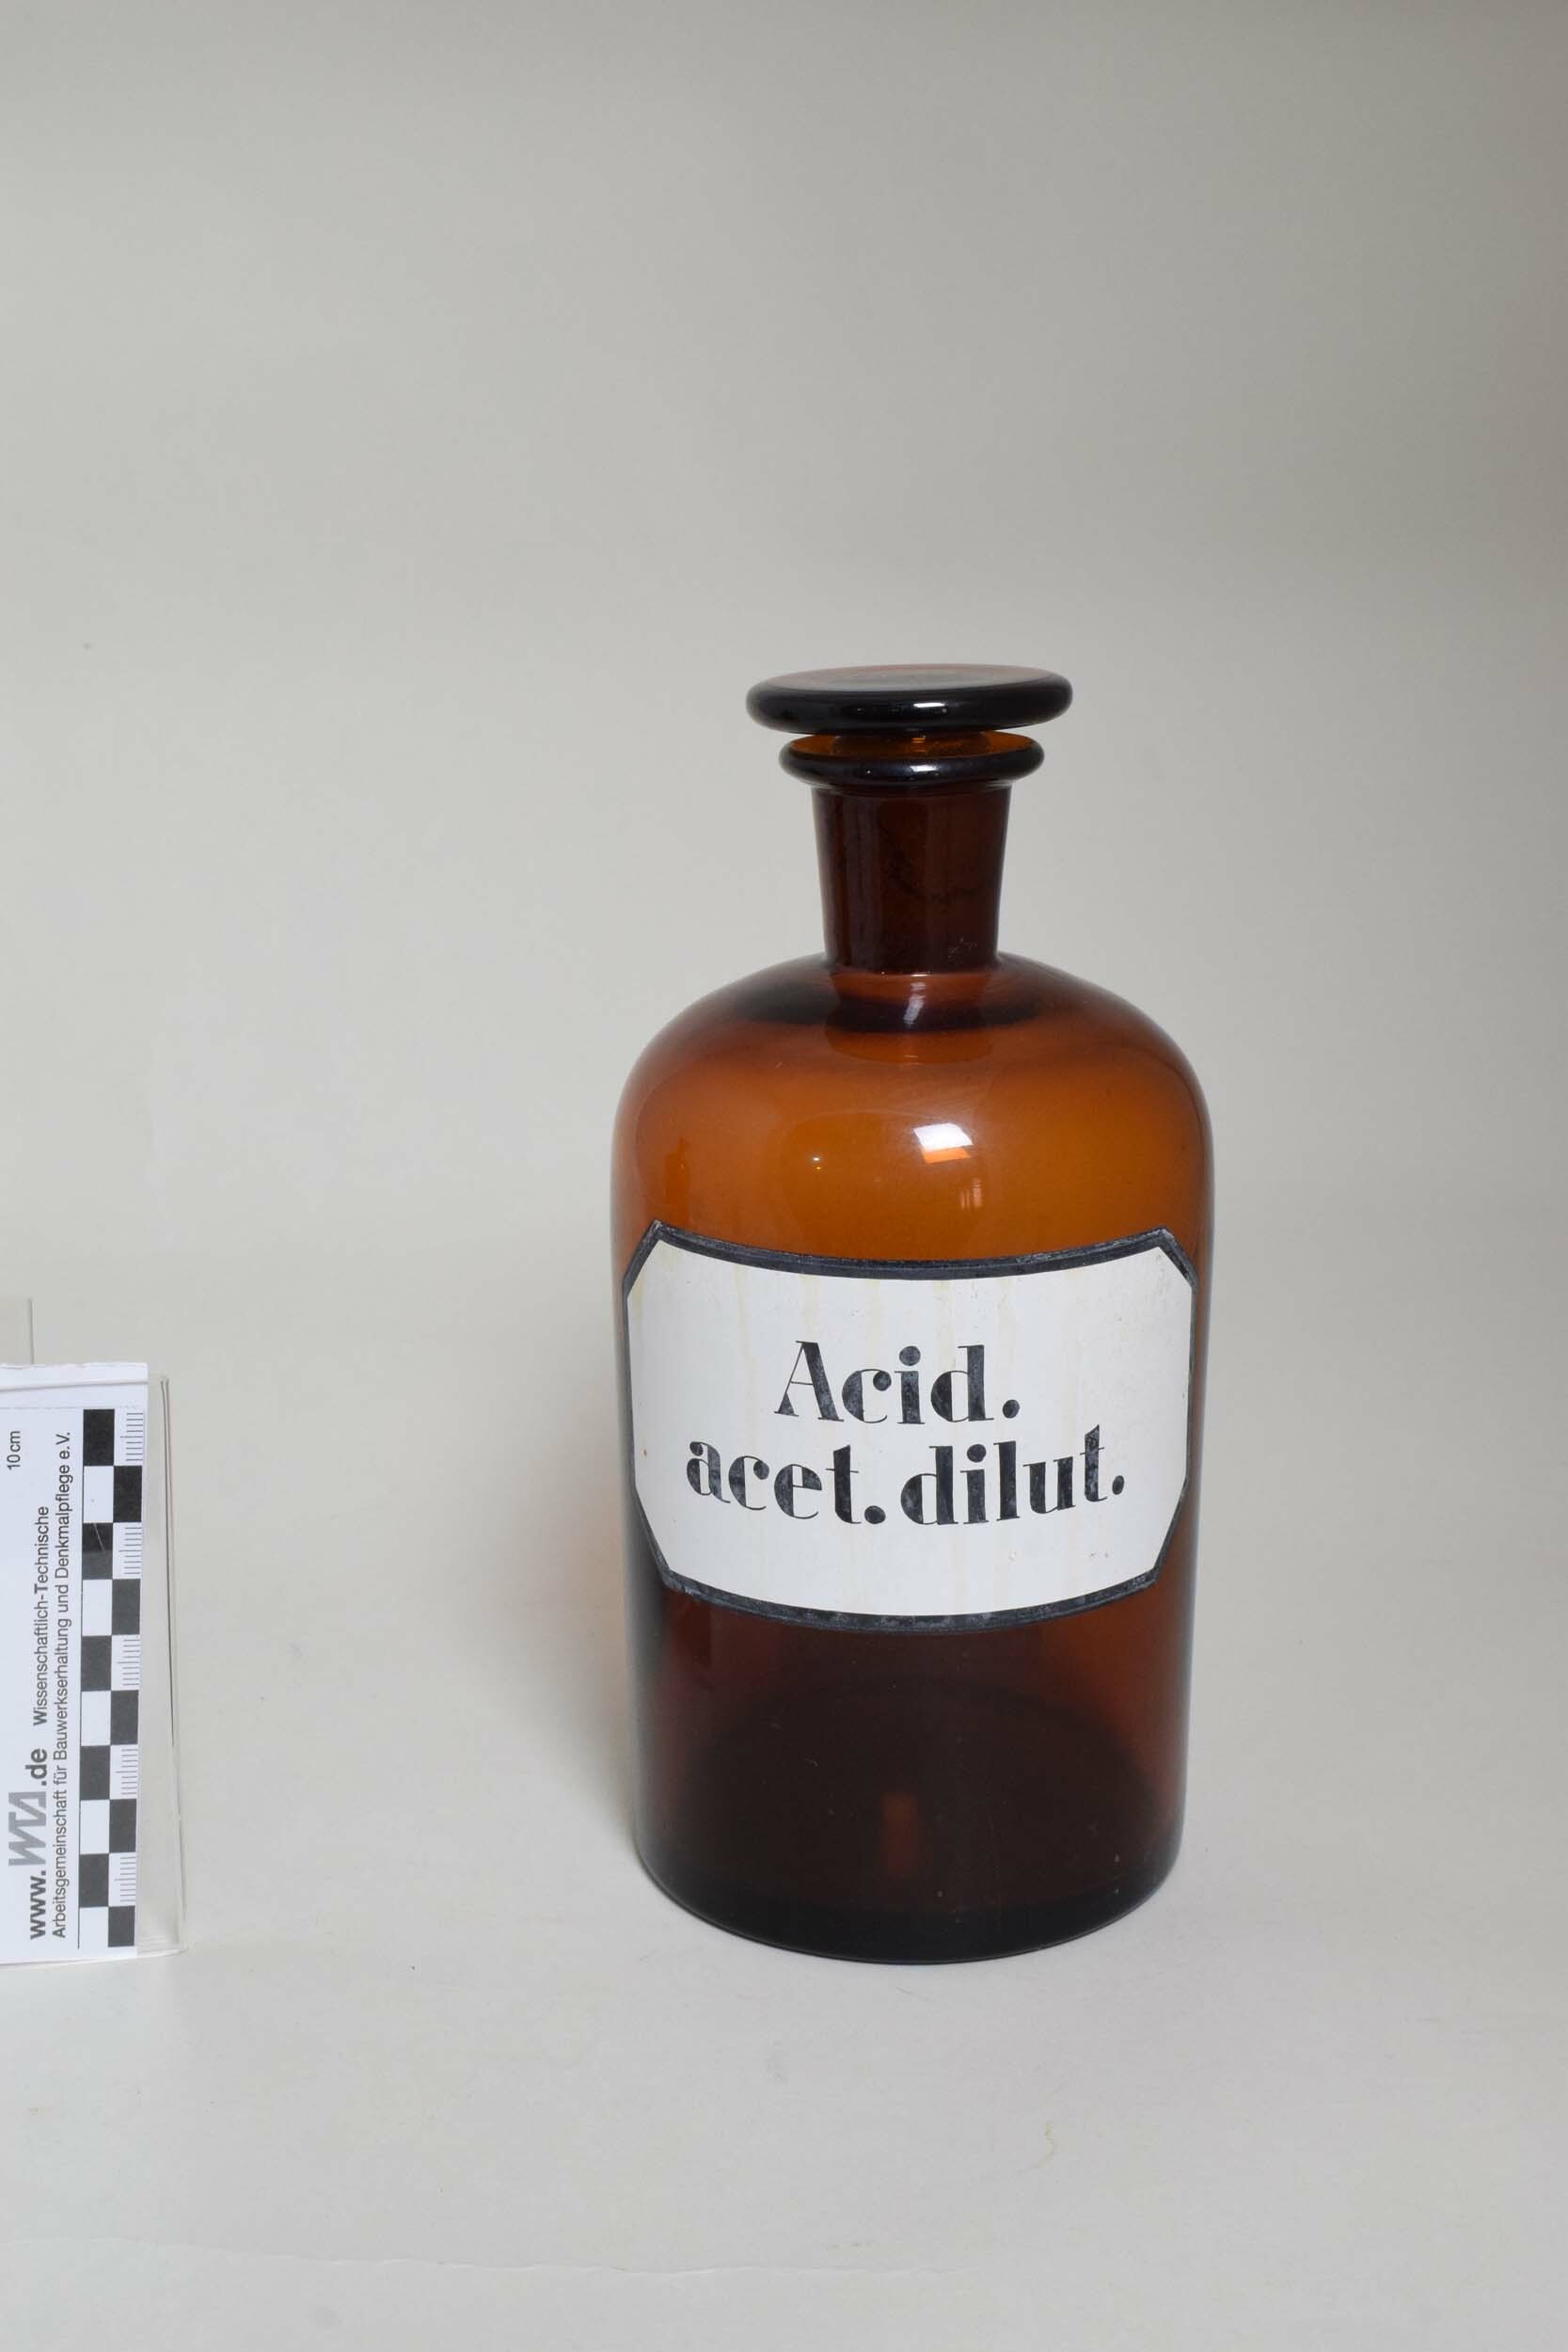 Apothekenflasche "Acid. acet. dilut." (Heimatmuseum Dohna CC BY-NC-SA)